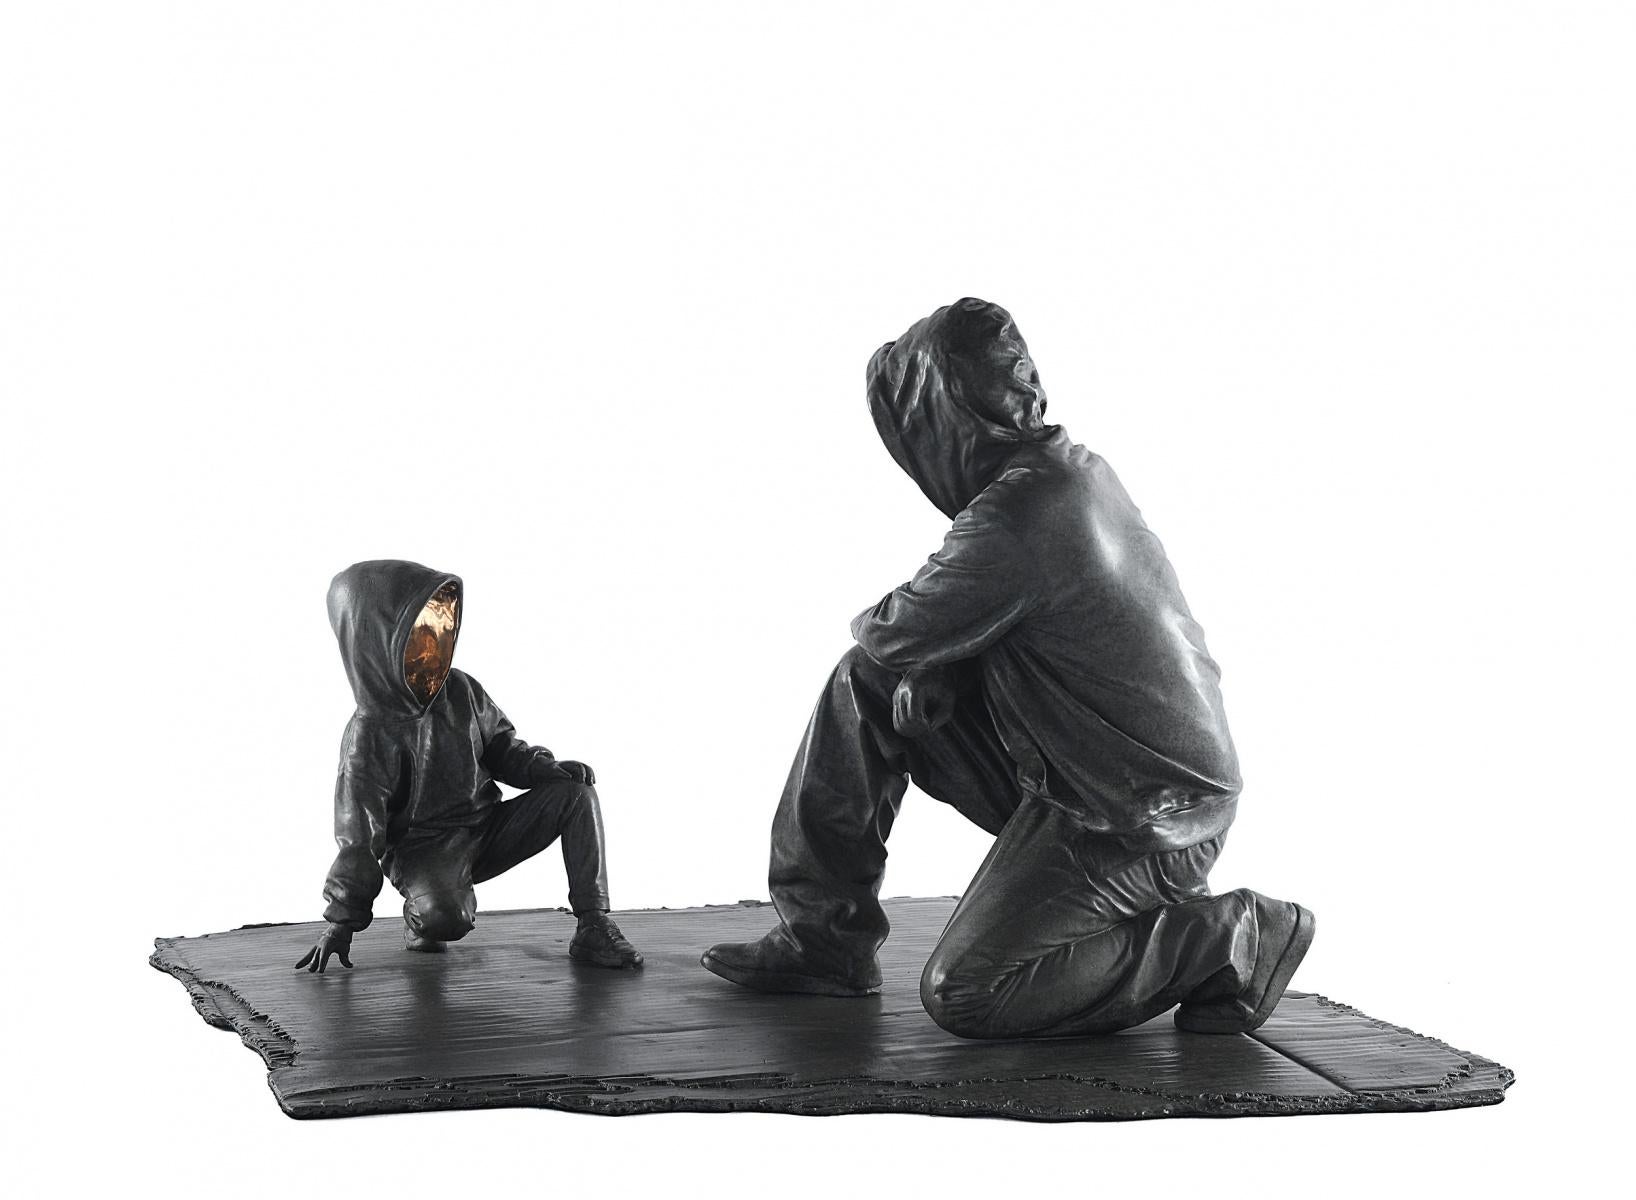 "Dear Thedodsia" Sculpture en bronze 13 x 15 x 13 pouces Edition 3/8 par Huang Yulong

À PROPOS DE L'ARTISTE
Huang Yulong est né en 1983 dans la province d'Anhui, en Chine. En 2007, il a obtenu une licence en sculpture de l'Institut de céramique de